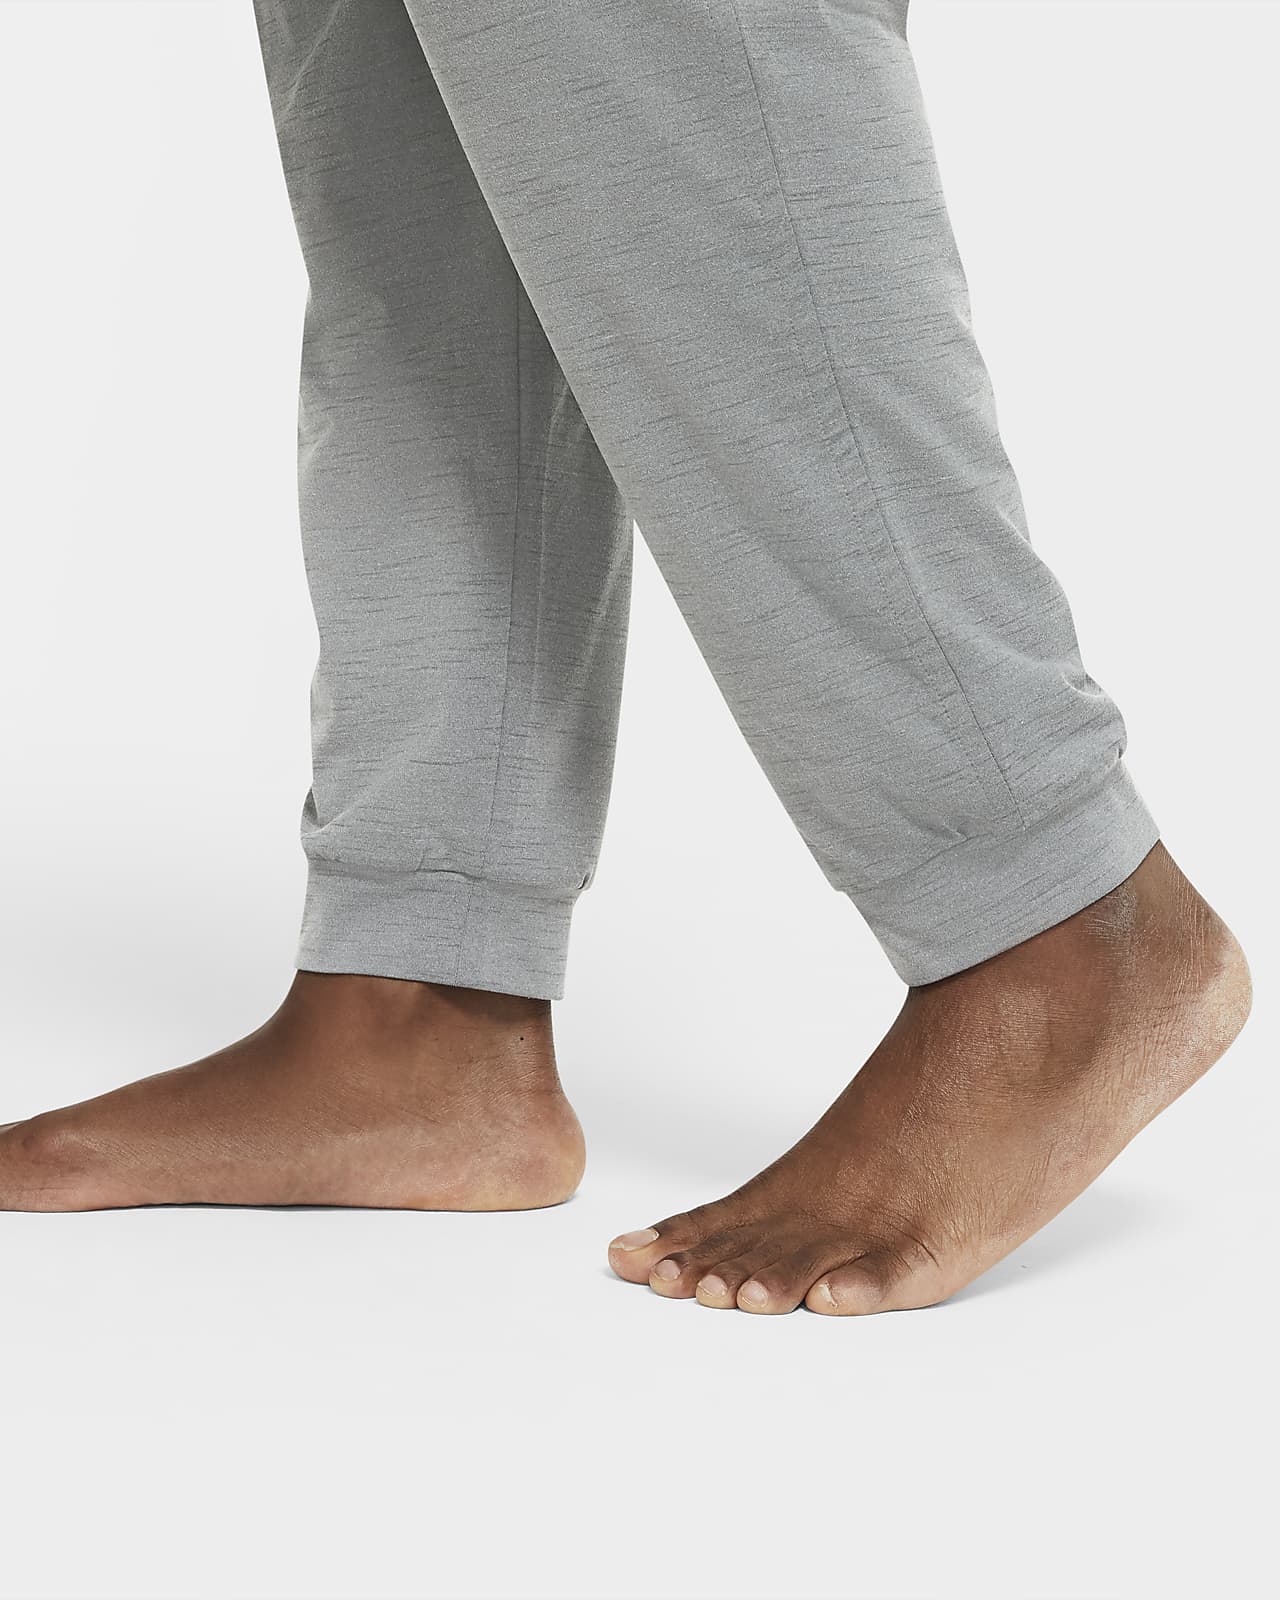  Nike Men Yoga Dri-FIT Pants (as1, Alpha, s, Regular